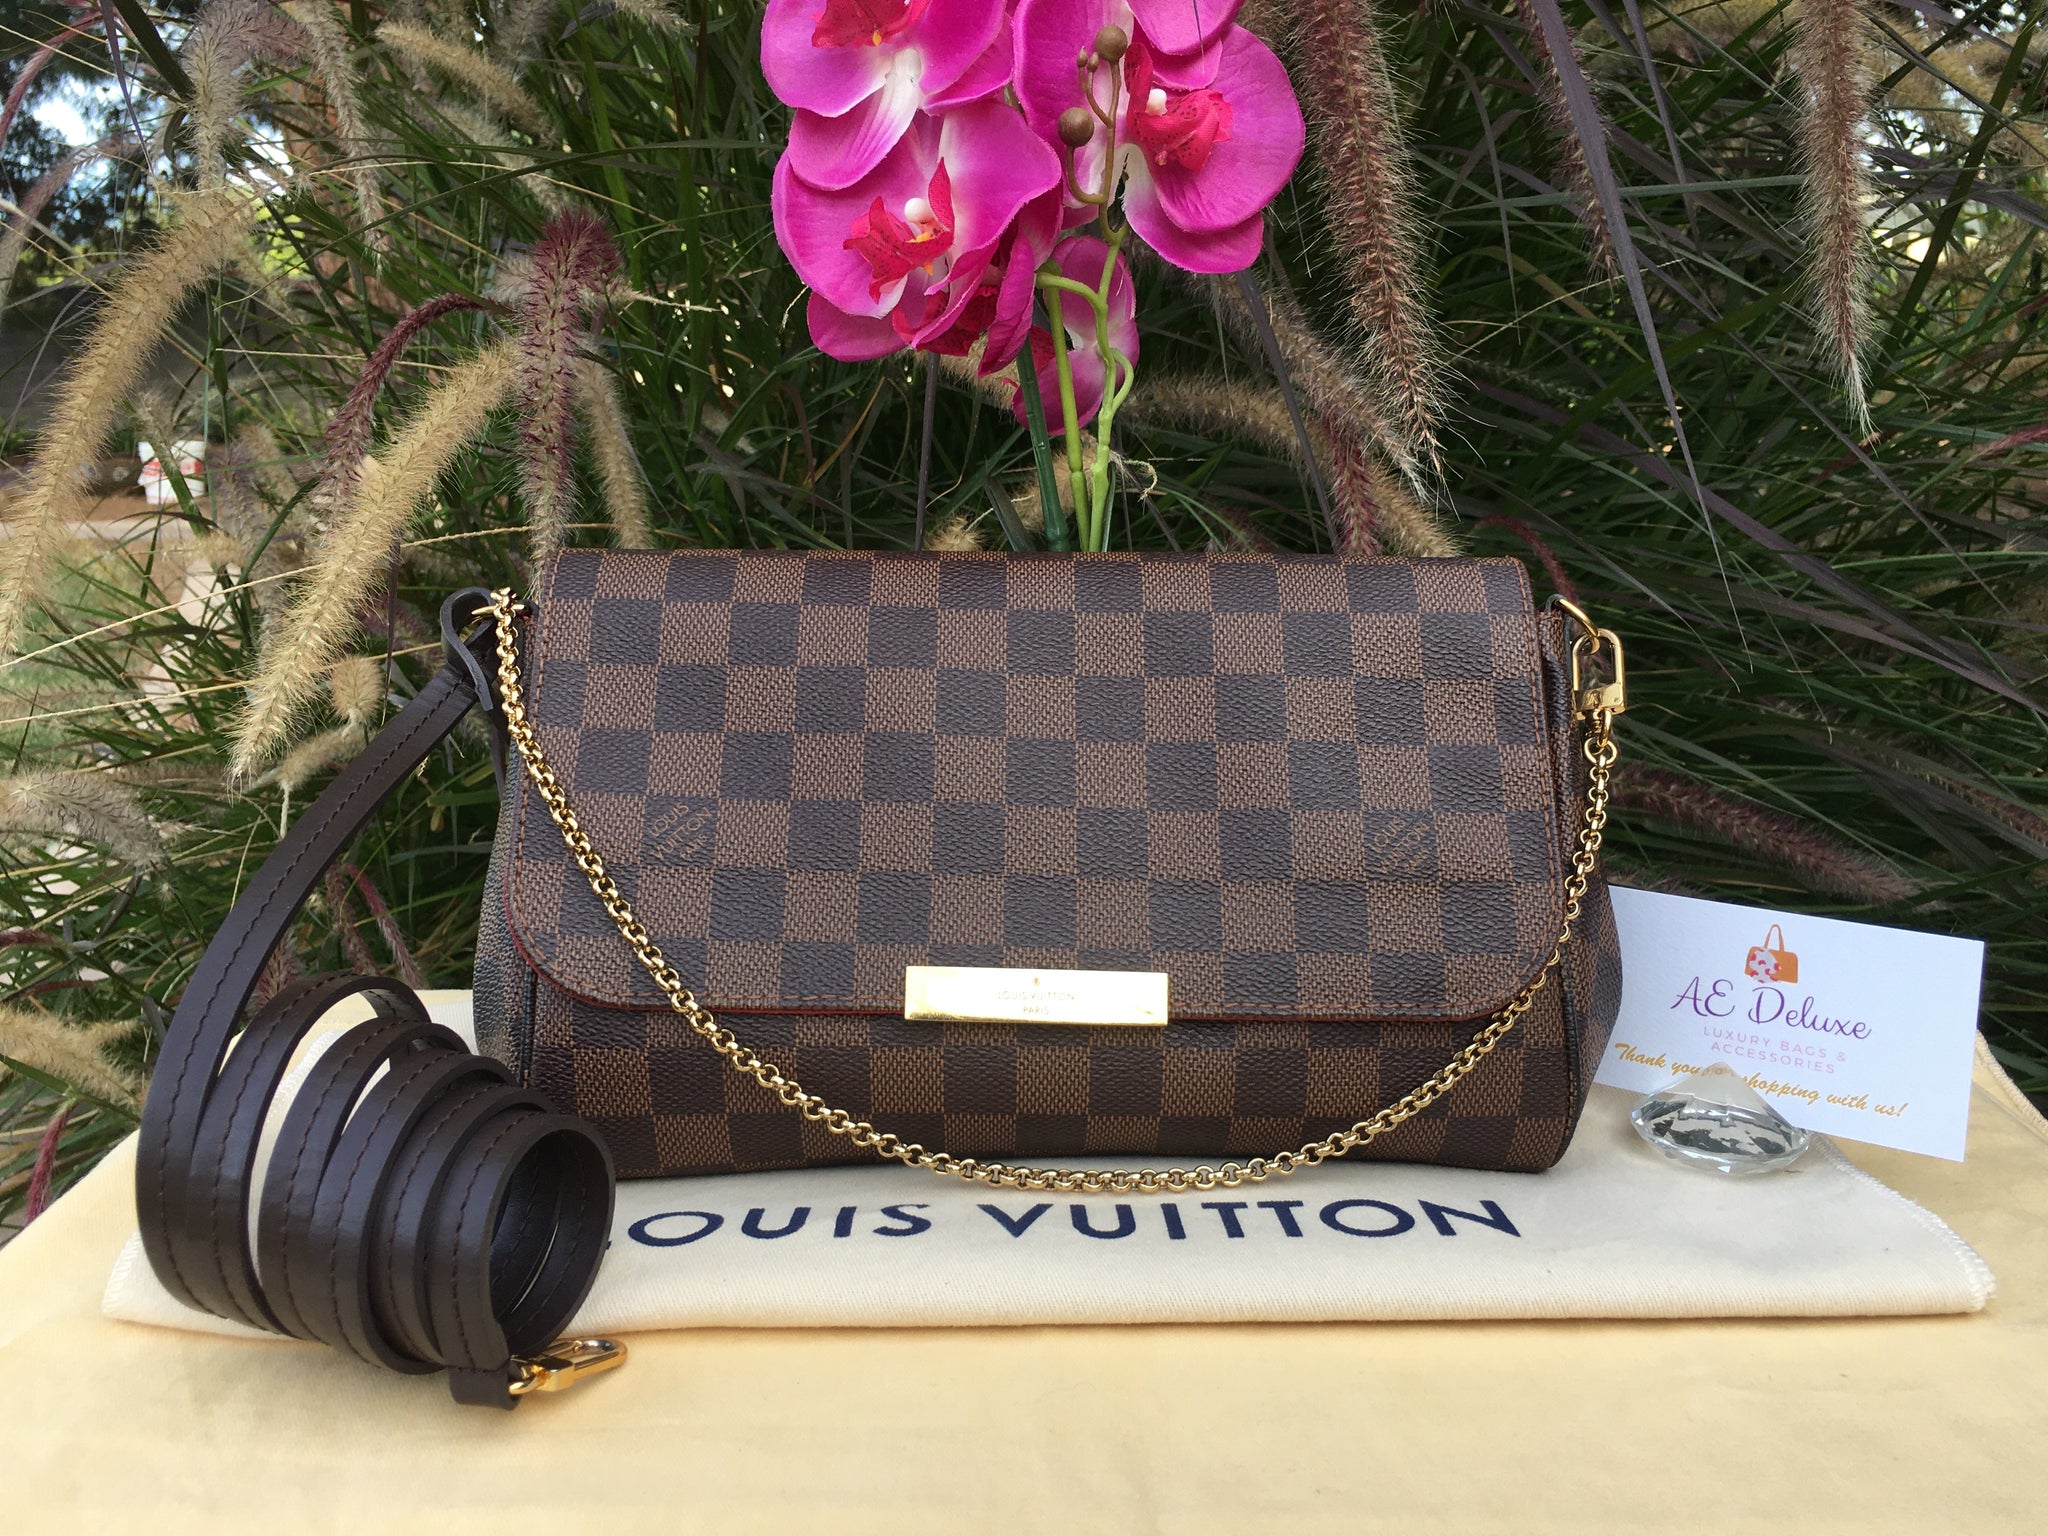 Louis Vuitton Favorite MM Damier Azur bag